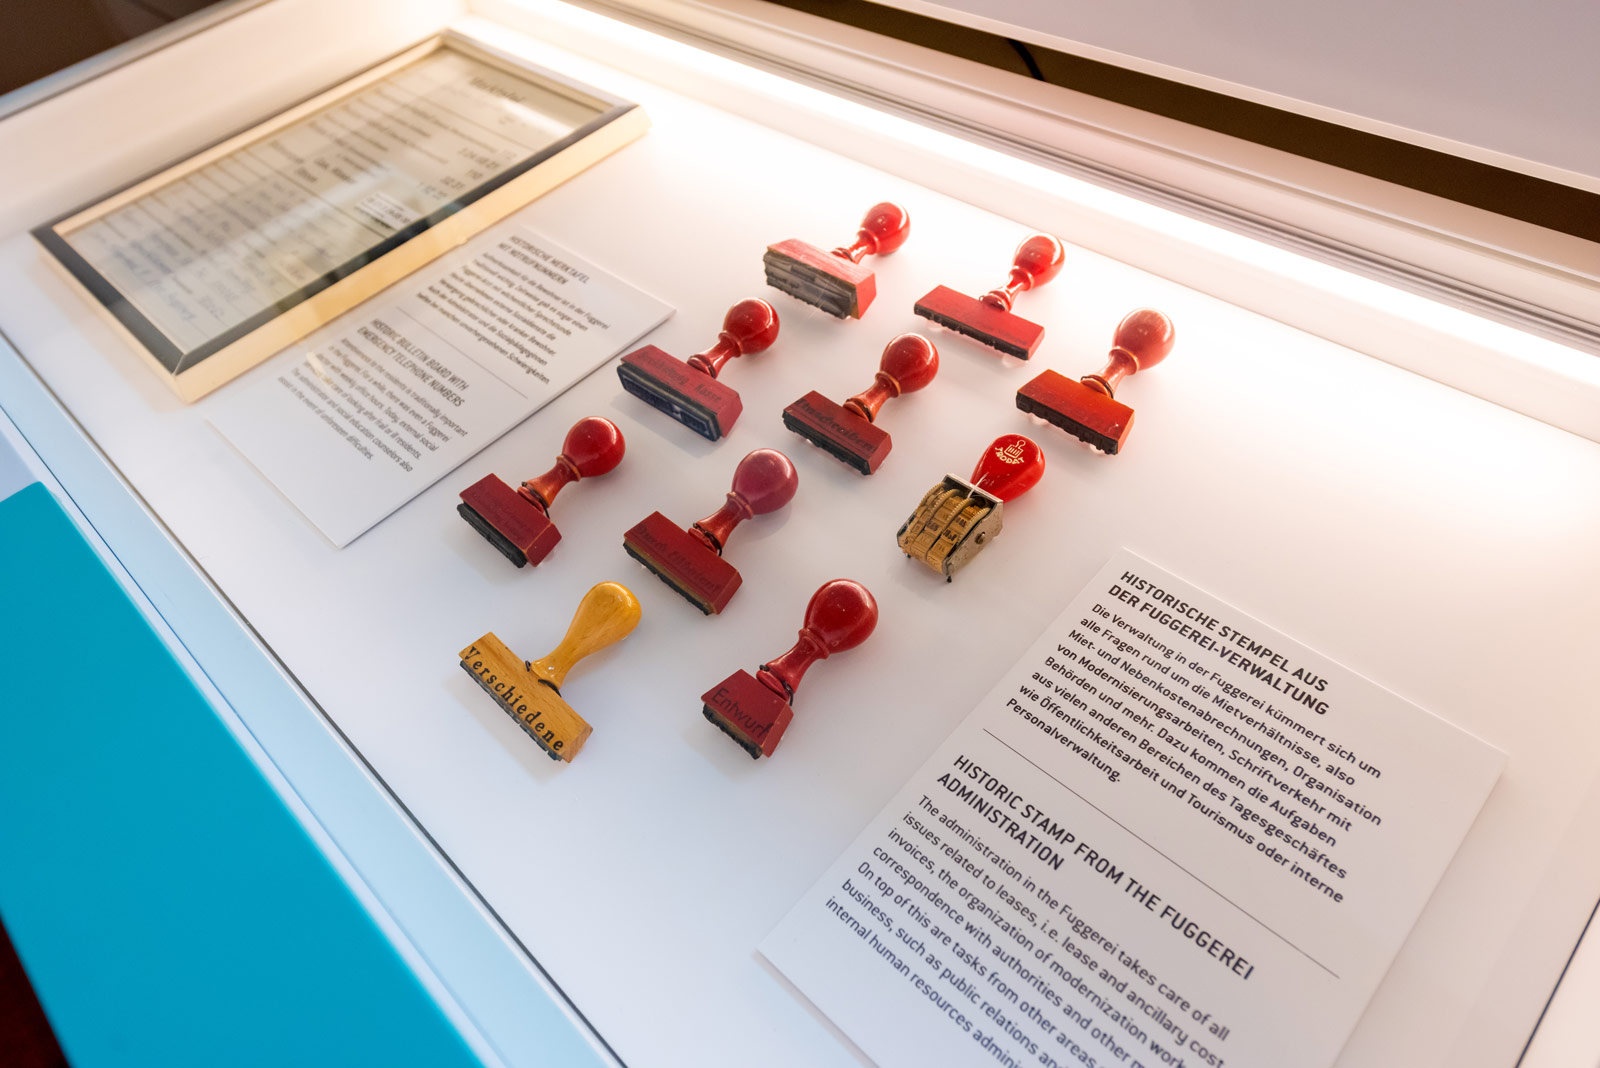 Das Referenzbild für Ausstellungsgestaltung aus der Dauerausstellung Museum der Bewohner zeigt eine Exponat-Präsentation